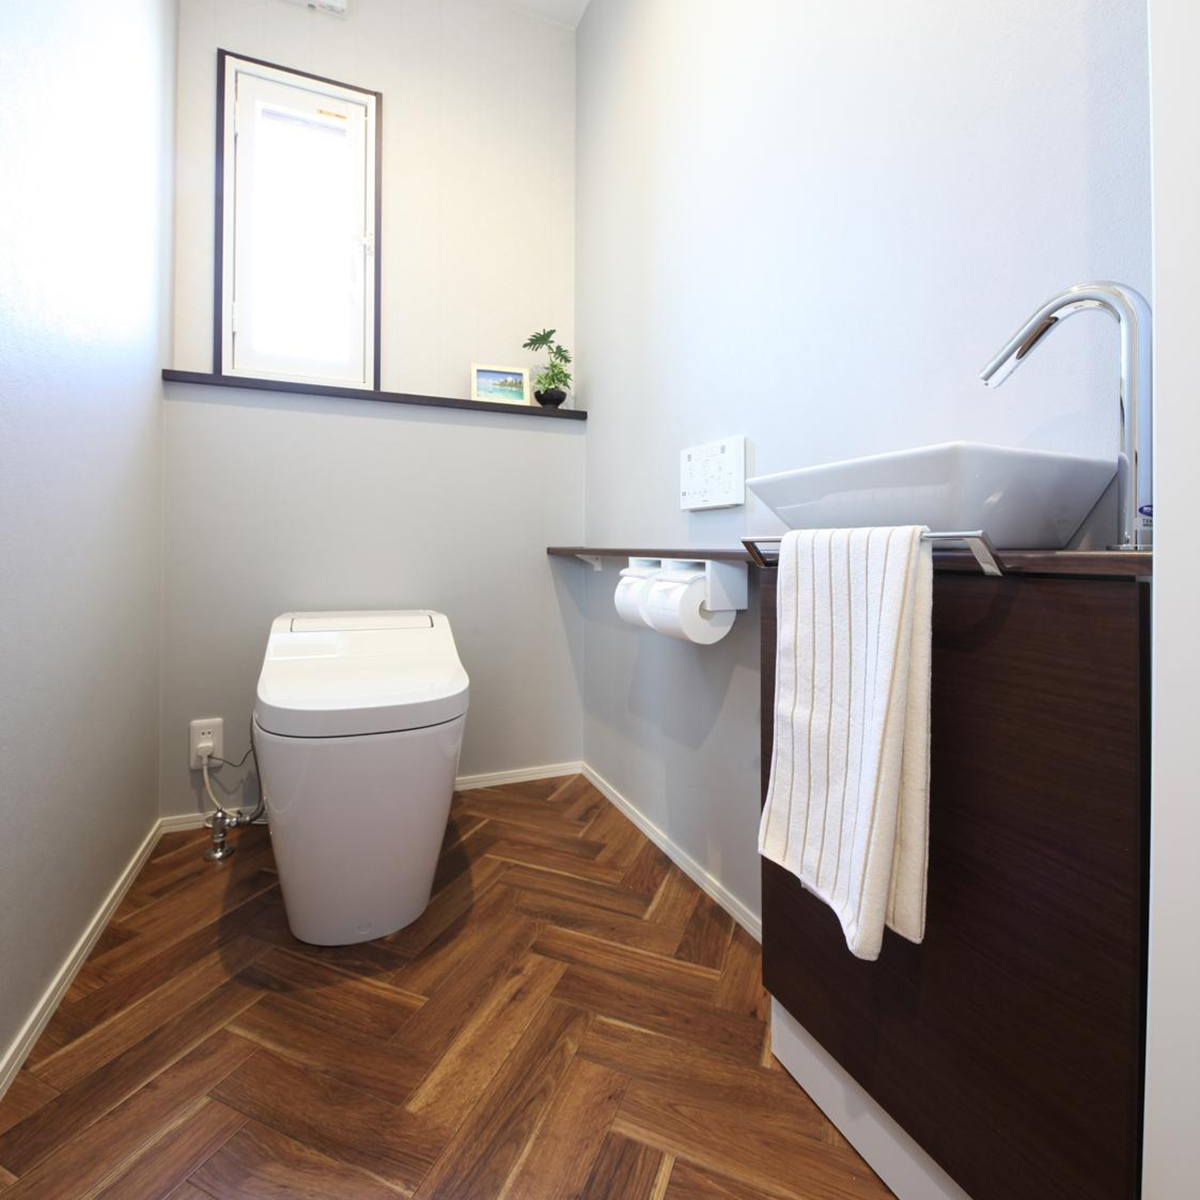 ヘリンボーン柄の床が印象的なトイレ